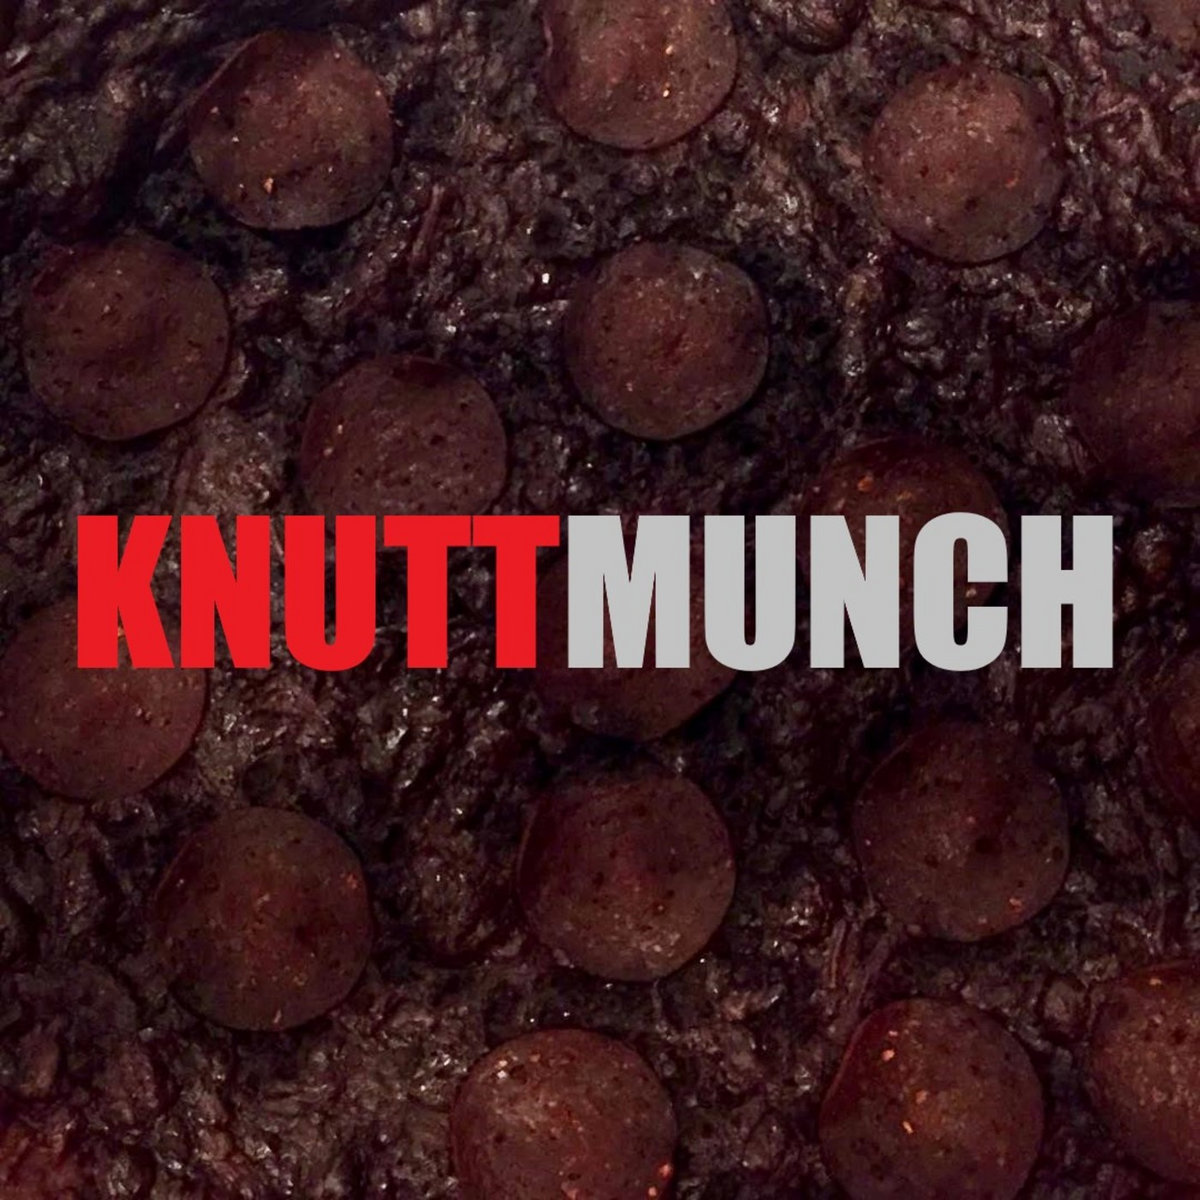 KNUTTMUNCH - Knuttmunch cover 